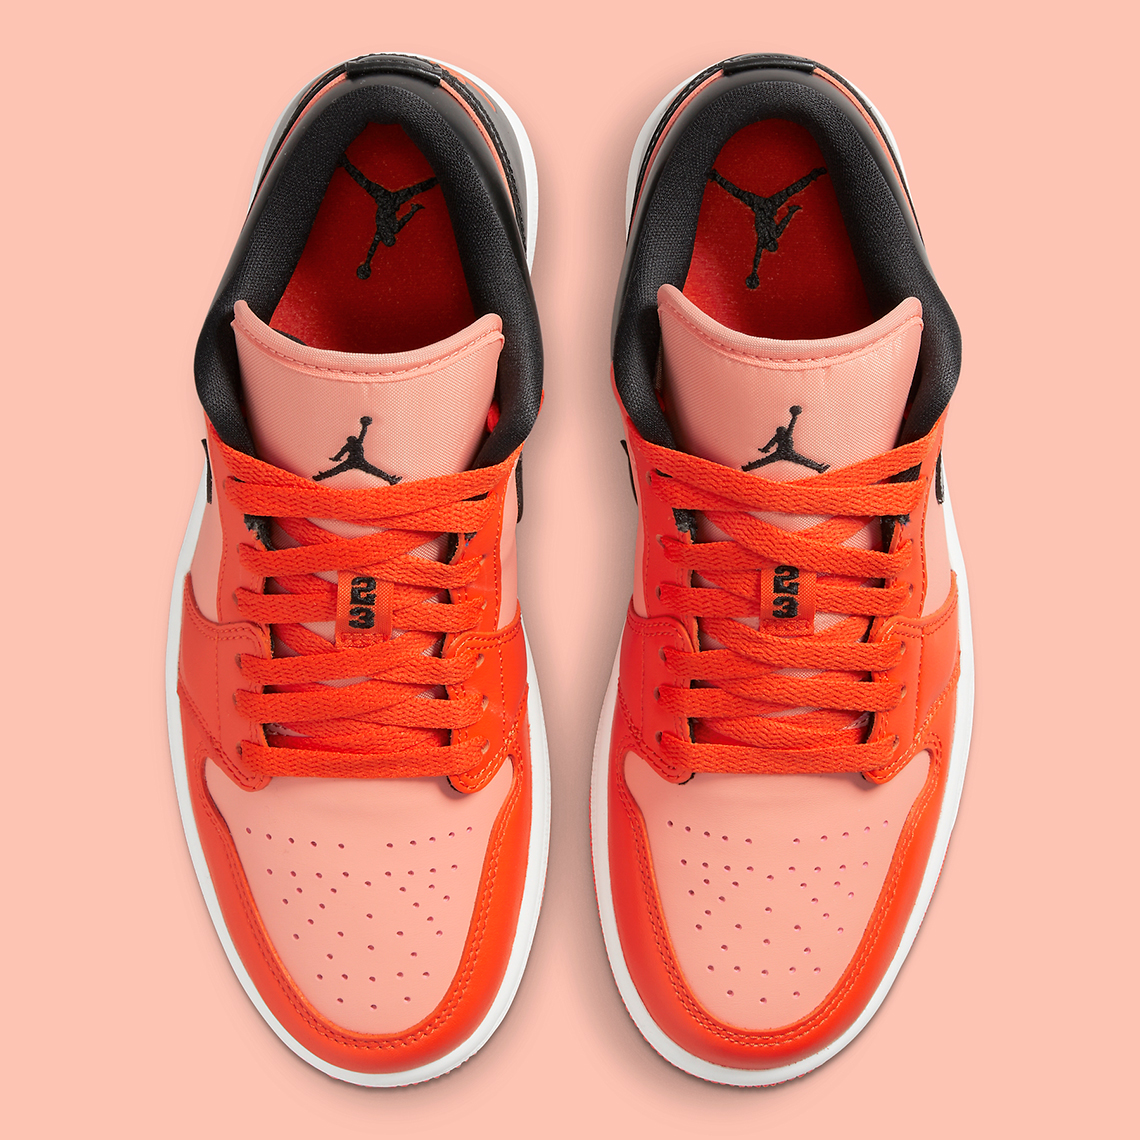 Air Jordan 1 Low Orange Black DM3379-600 | SneakerNews.com